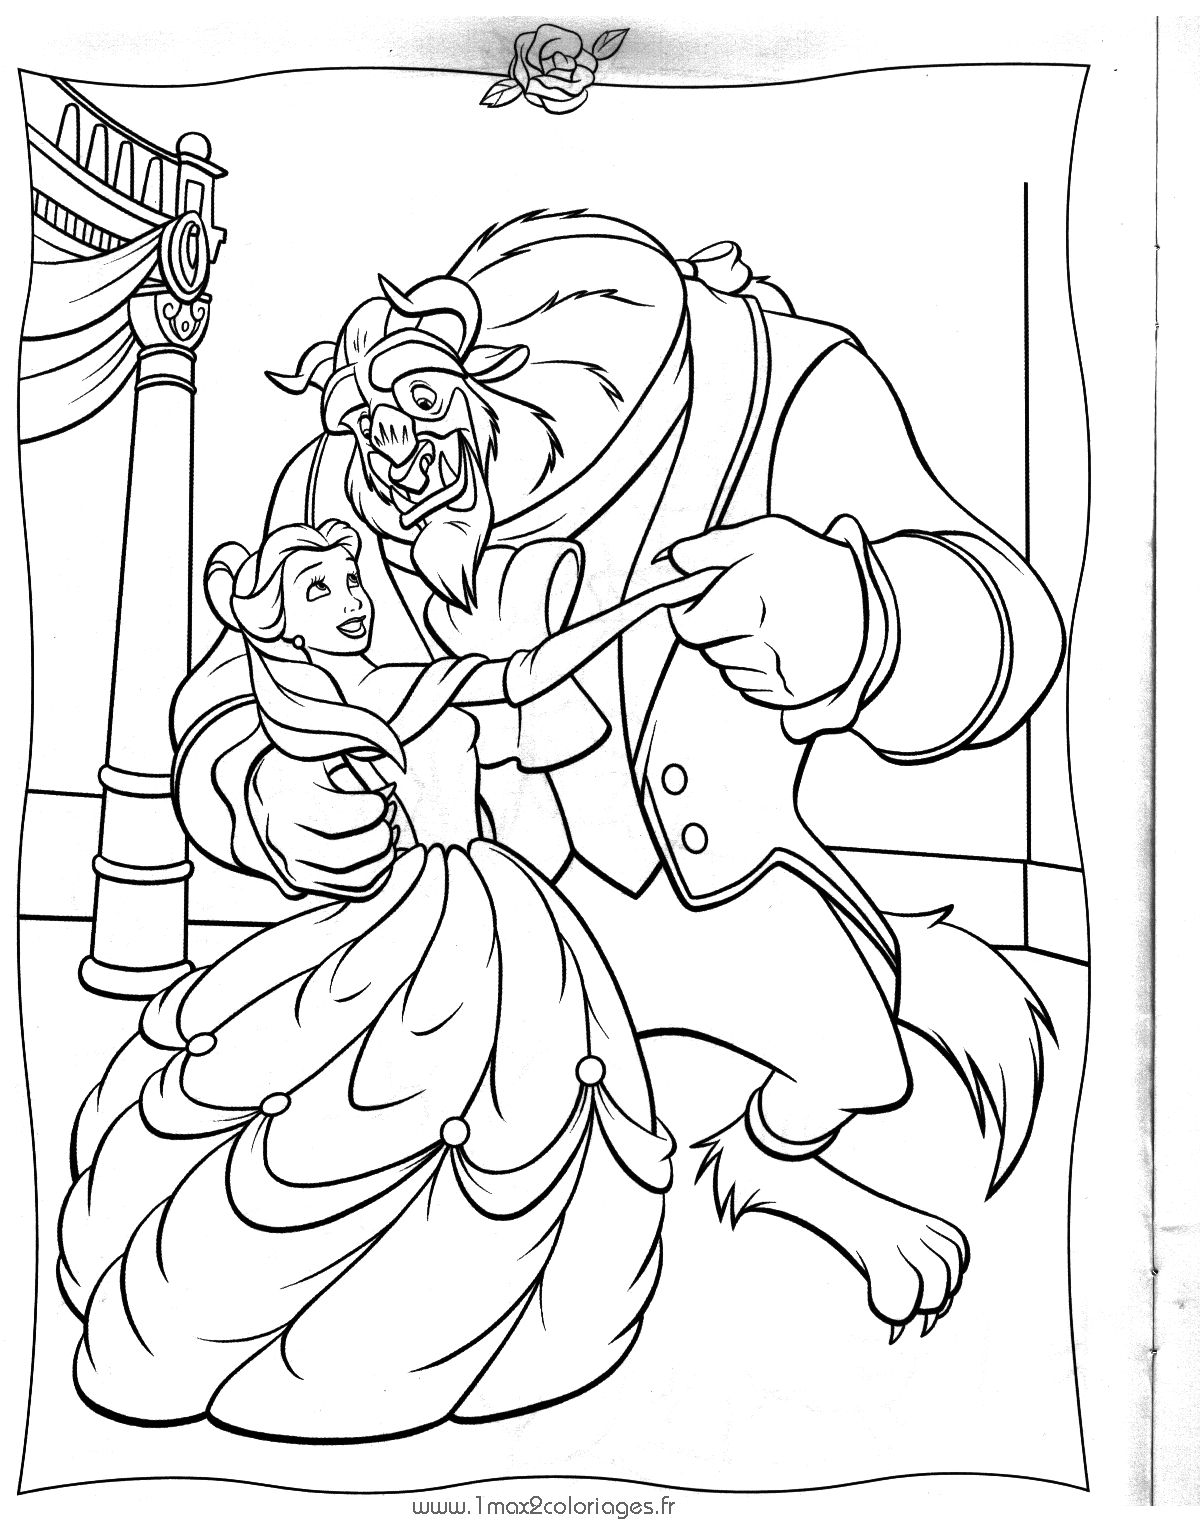 Раскраска: Красавица и чудовище (Анимационные фильмы) #131041 - Бесплатные раскраски для печати